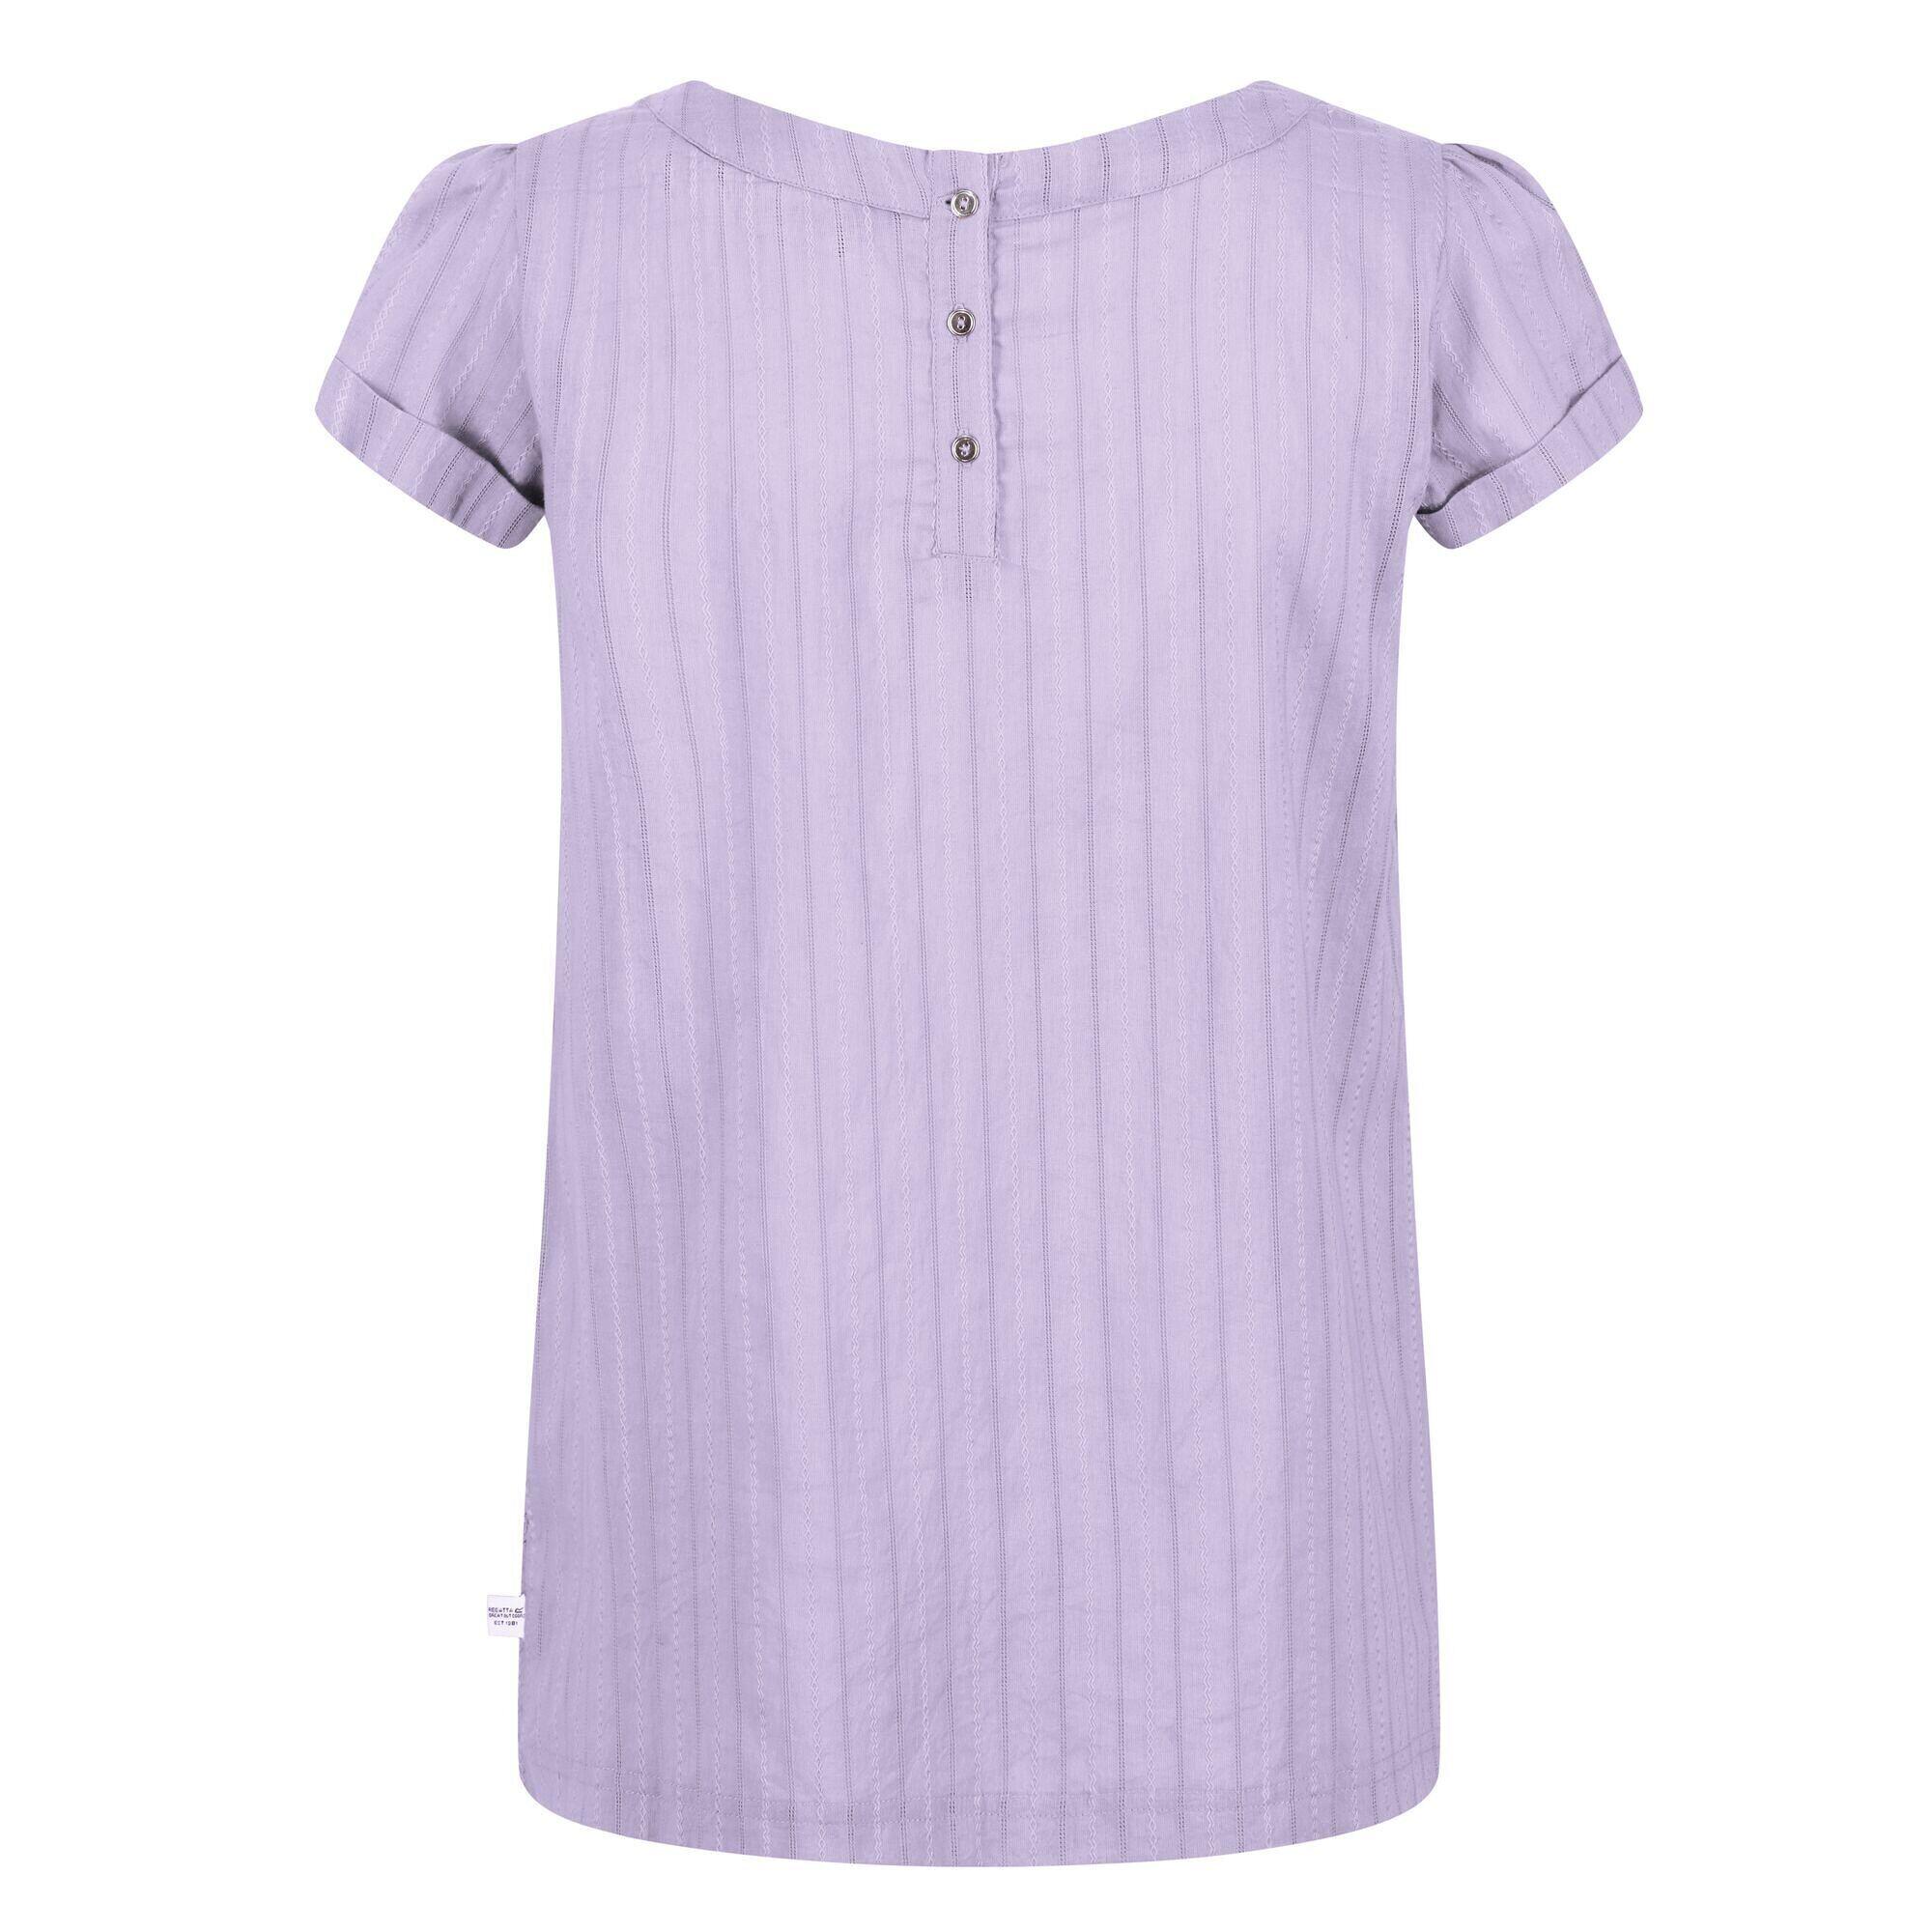 Womens/Ladies Jaelynn Dobby Cotton TShirt (Pastel Lilac) 2/5